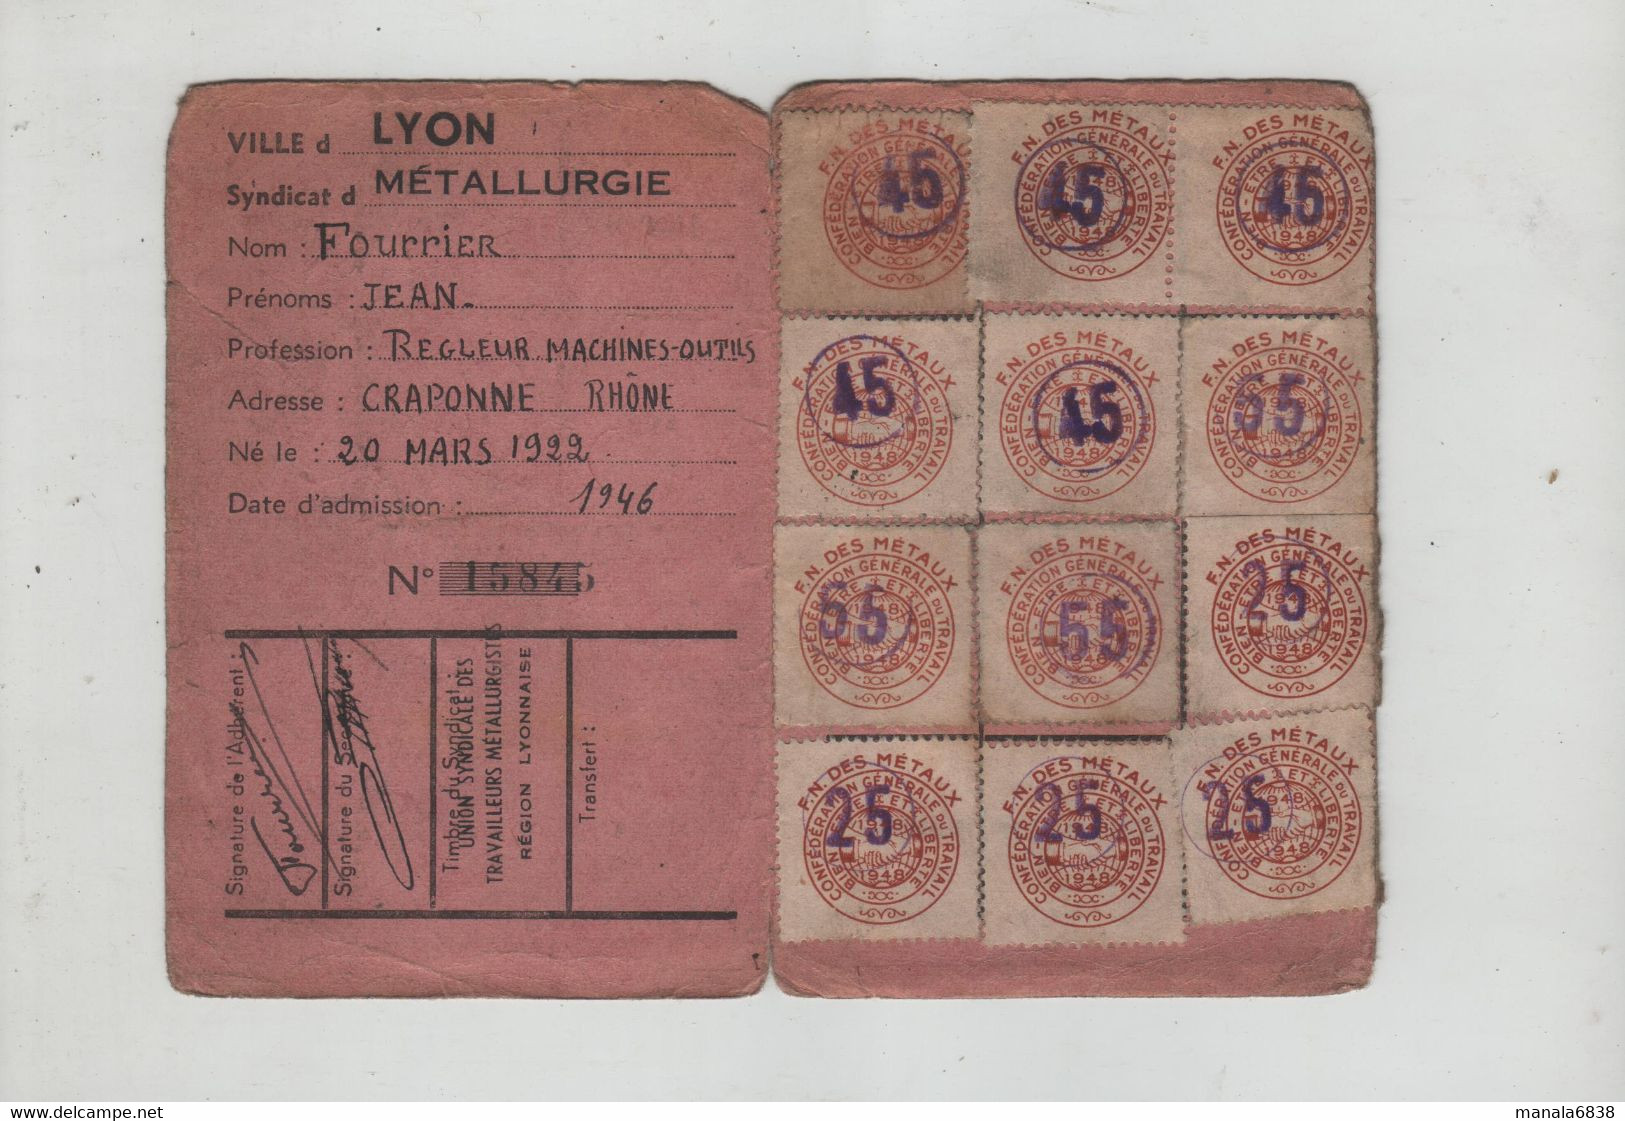 Carte Confédérale 1948 CGT Métallurgie Fourrier Régleur Machines Outils Craponne - Cartes De Membre